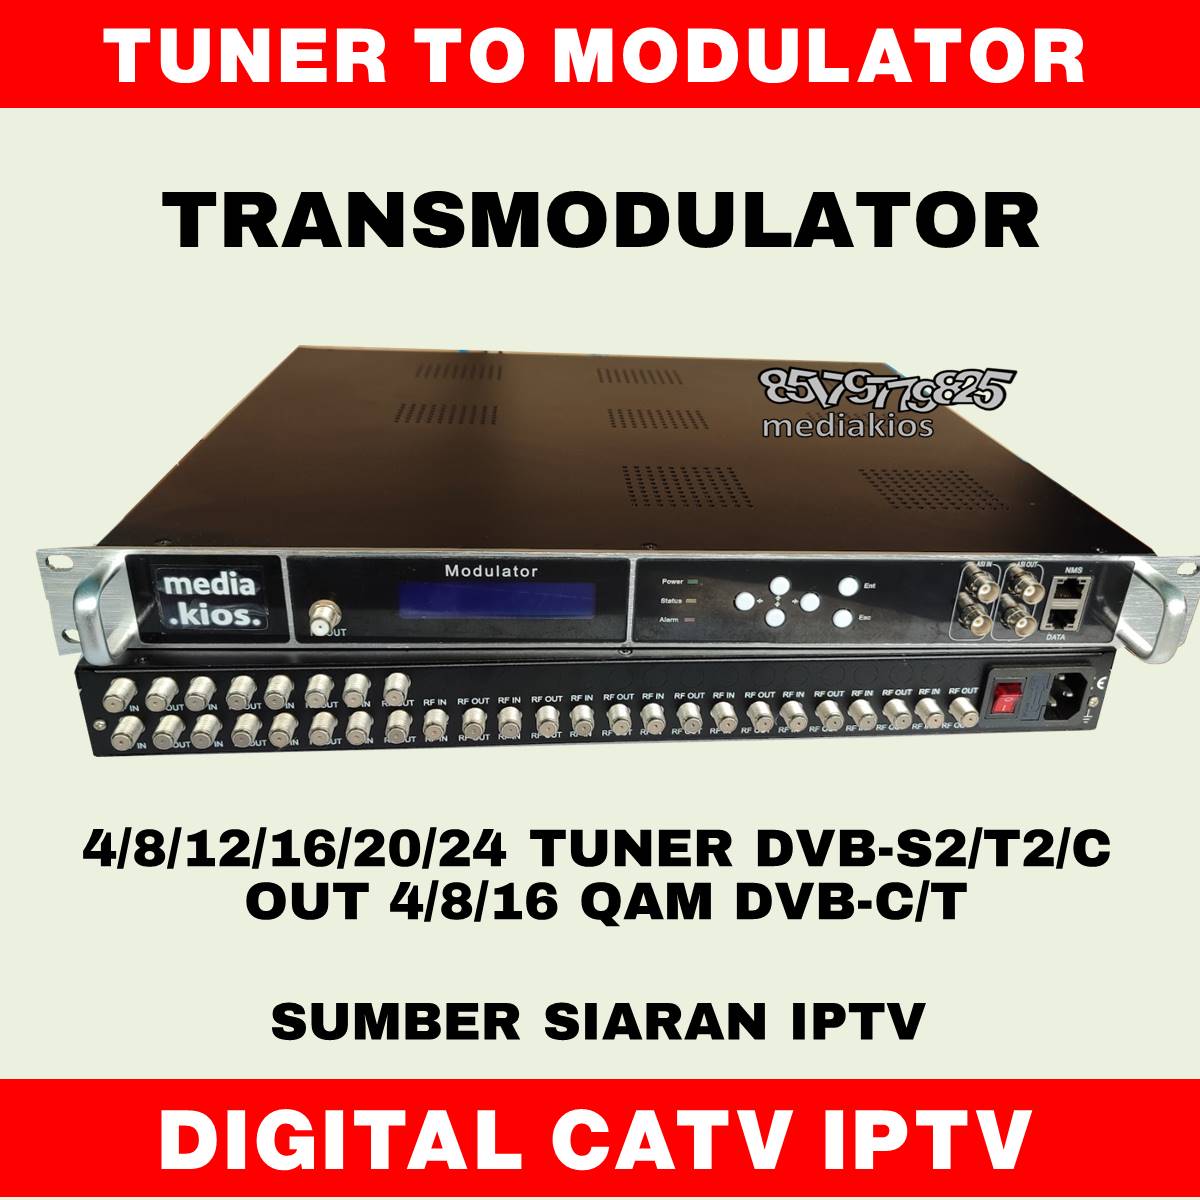 Transmodulator tuner dvb-s2/t2/c to modulator 4/8/16 qam dvb-c/t + ip catv iptv peralatan tv kabel digital